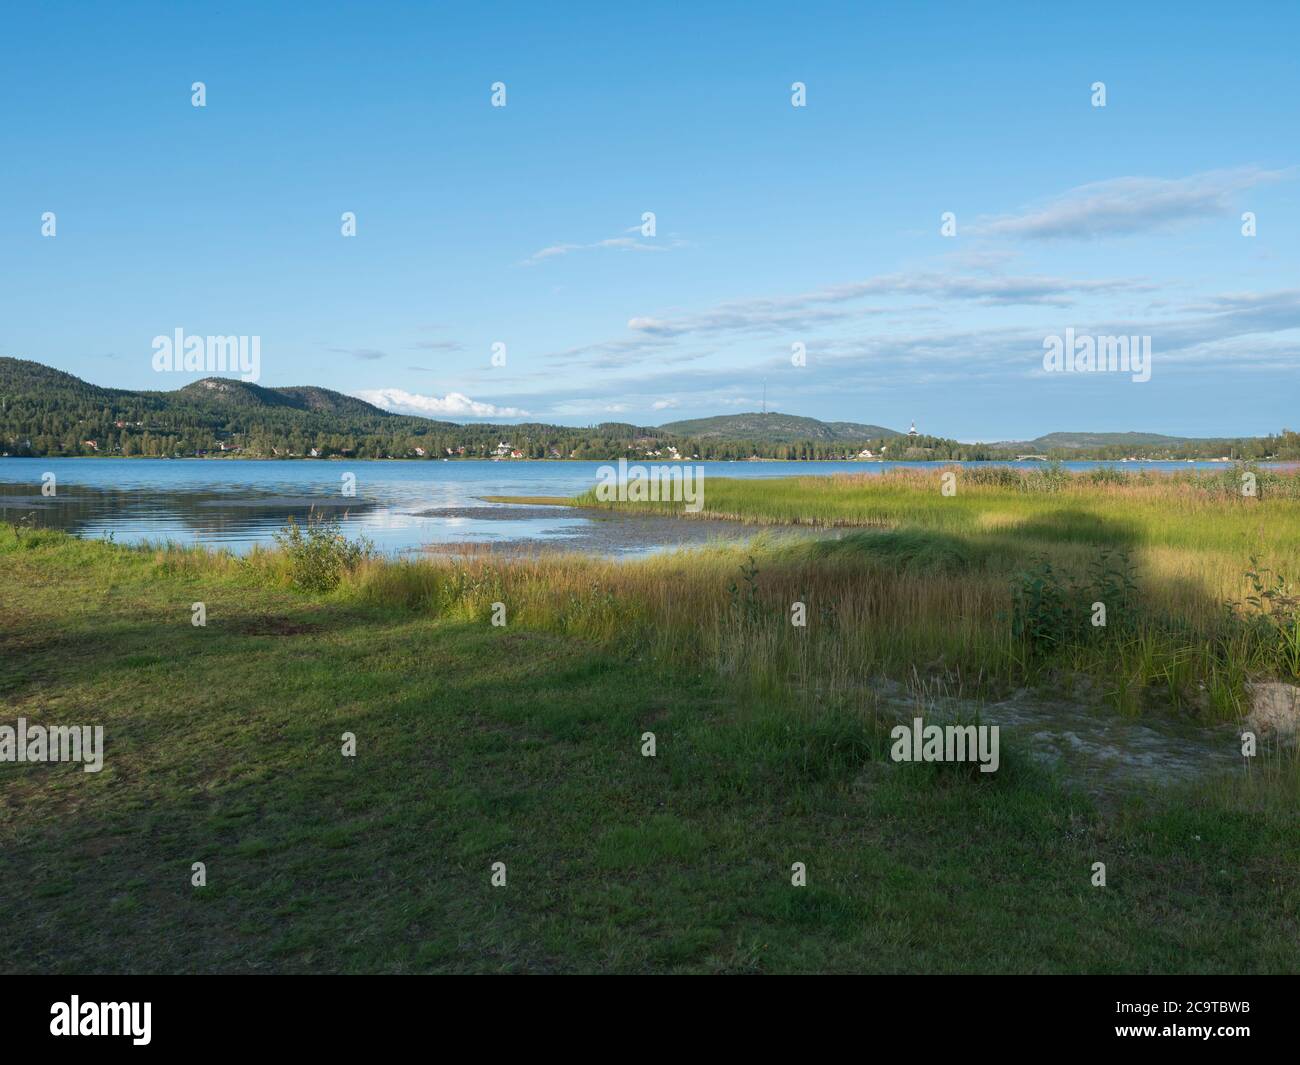 VEW sur le lac Sjalevadsfjarden dans la ville d'ornskoldsvik dans la région de Vasternorrland, en Suède. Jour ensoleillé d'été, fond bleu ciel Banque D'Images